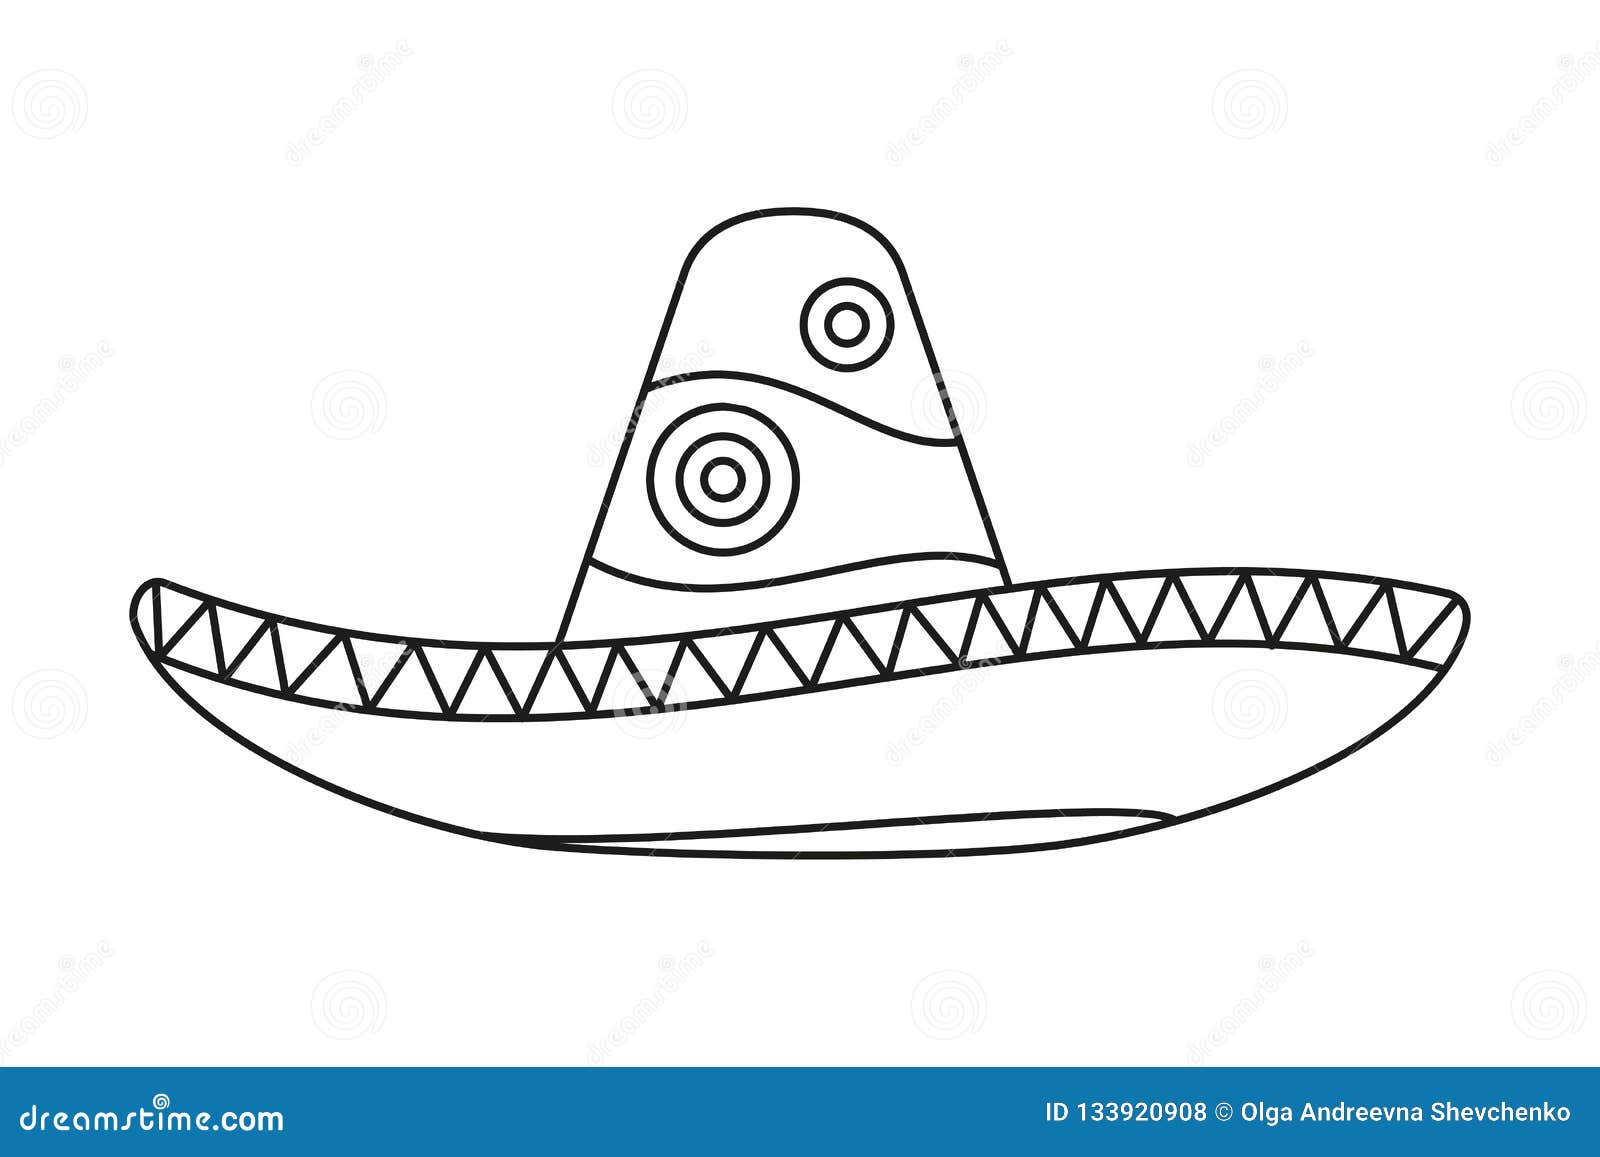 Мексиканская шляпа черно белая